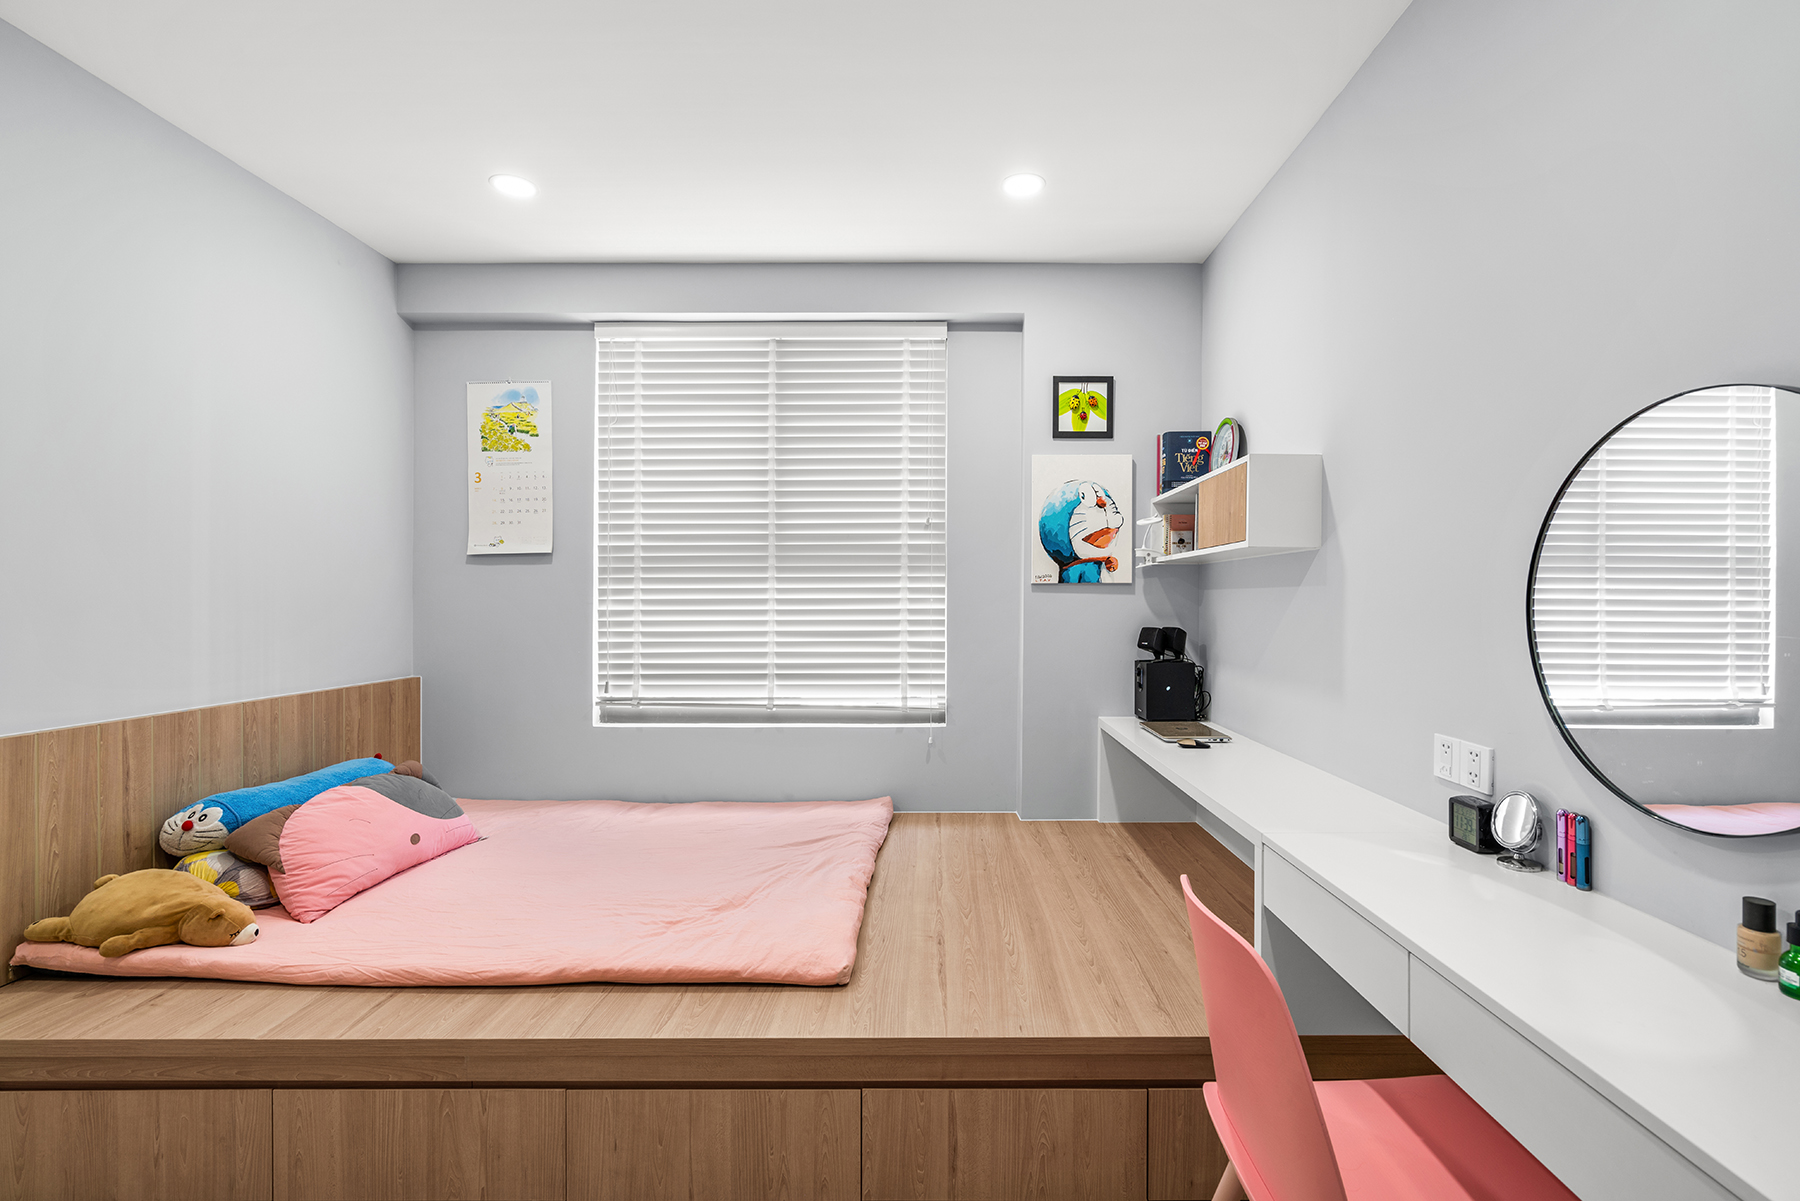 Thi công nội thất chung cư: Phòng ngủ ấm áp, nhẹ nhàng mà tinh tế